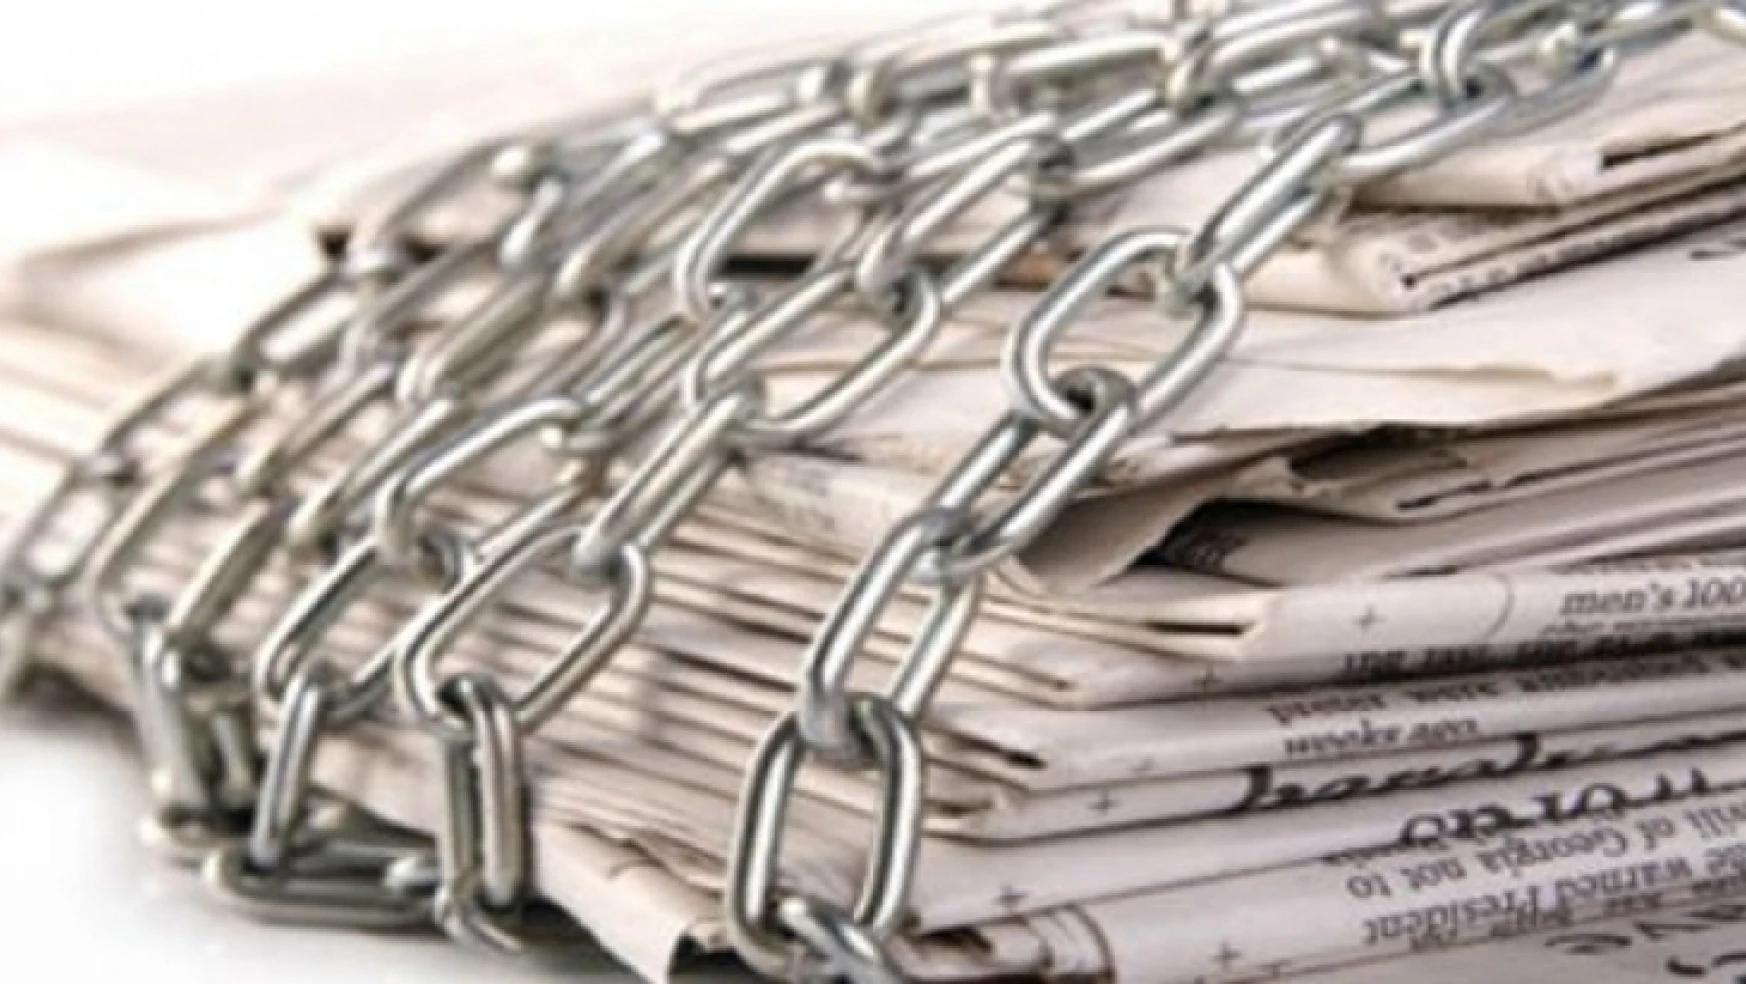 Gazete ve dergi sayısı %7,9 azaldı